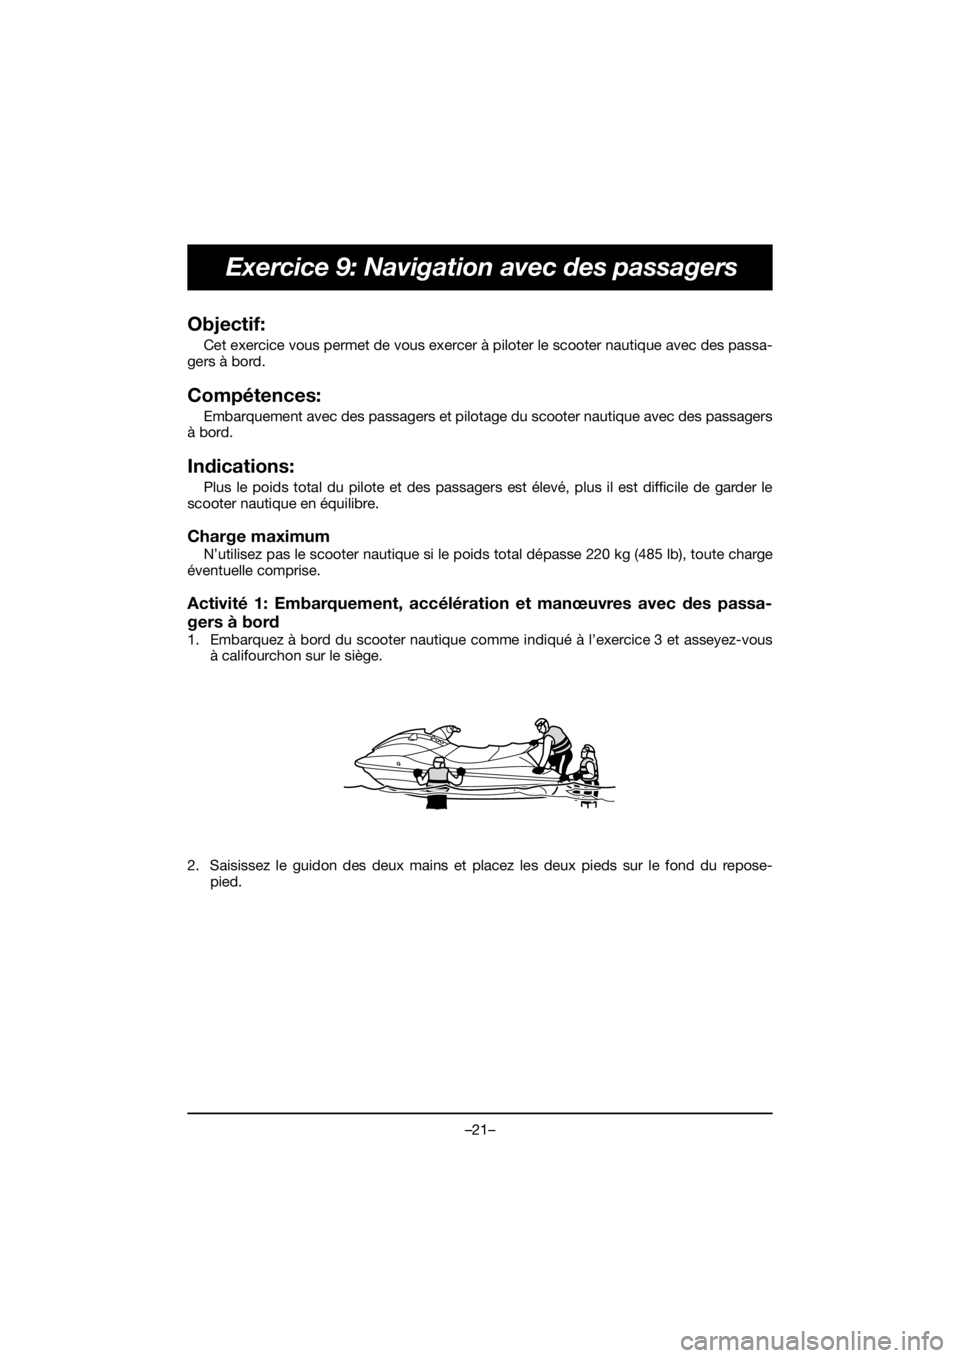 YAMAHA EX SPORT 2020 Service Manual –21–
Exercice 9: Navigation avec des passagers
Objectif: 
Cet exercice vous permet de vous exercer à piloter le scooter nautique avec des passa-
gers à bord.
Compétences: 
Embarquement avec des